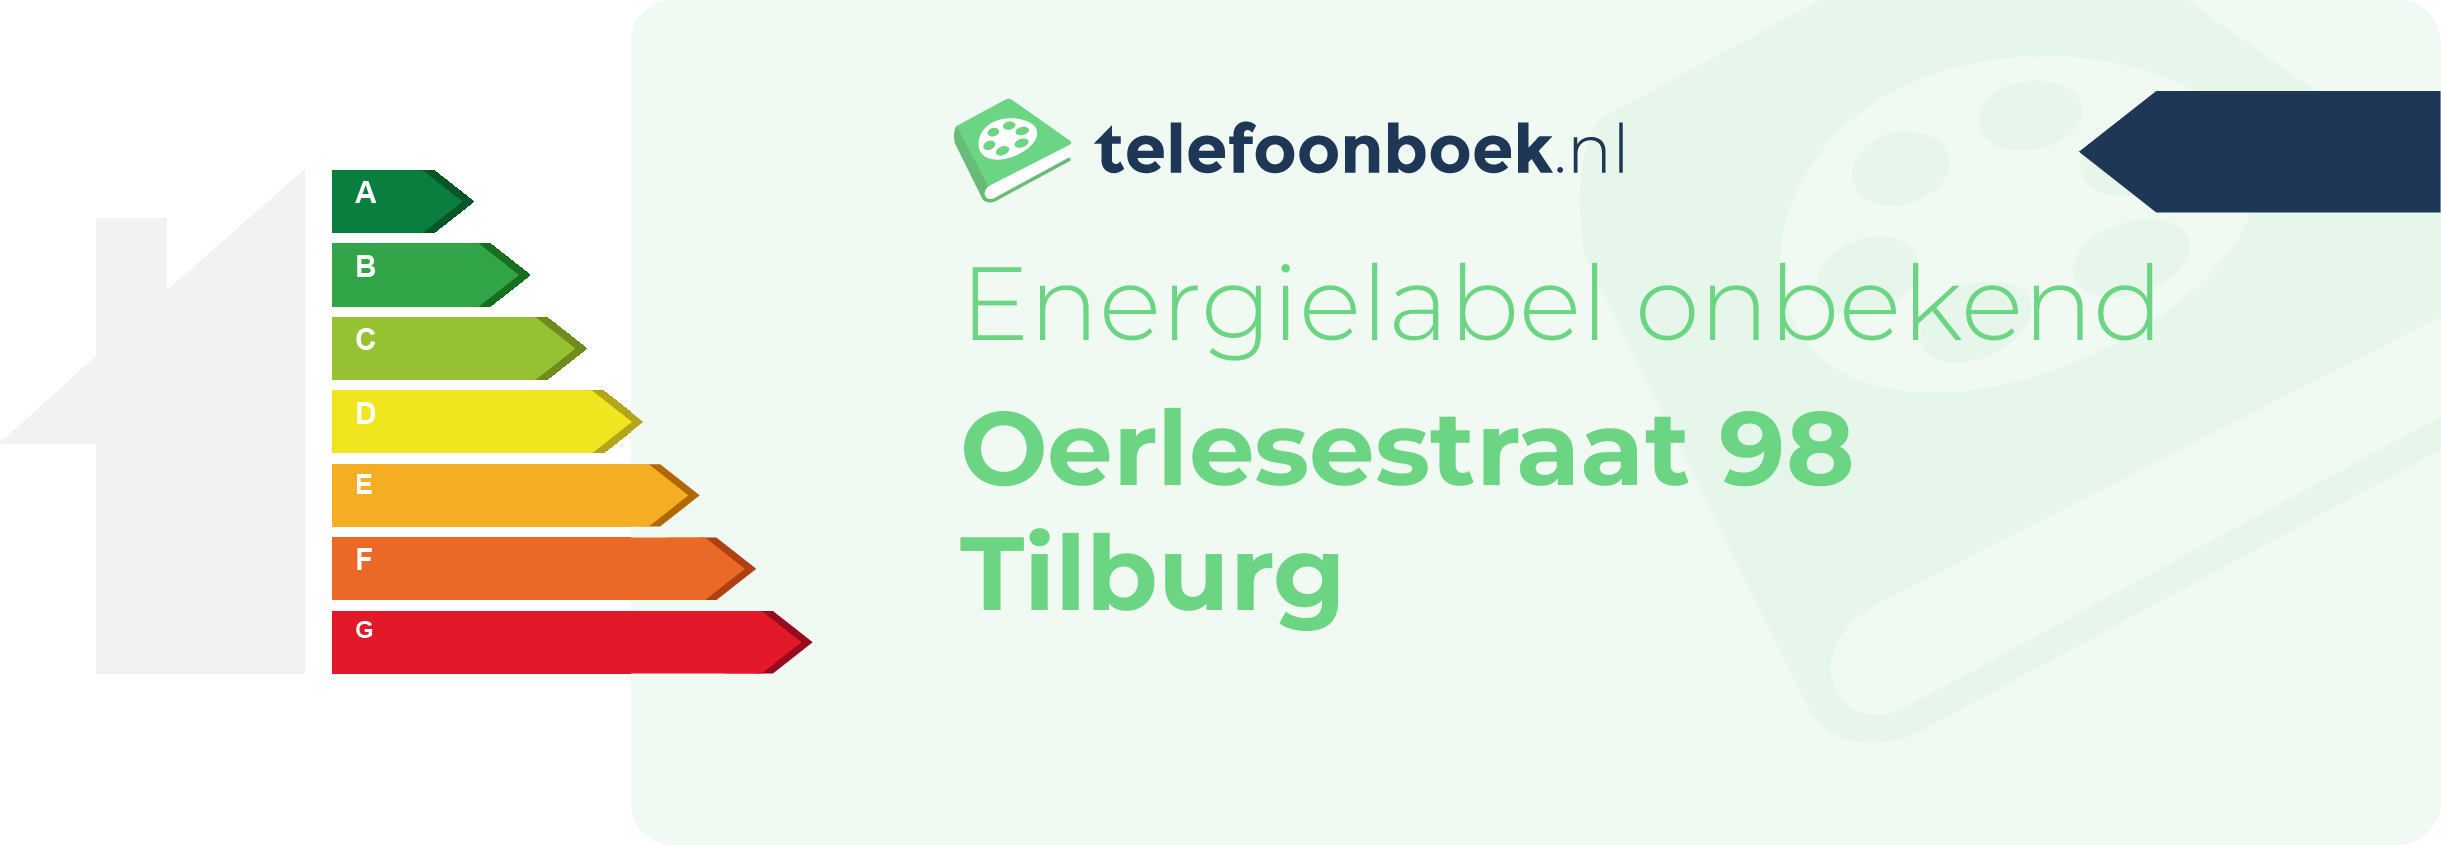 Energielabel Oerlesestraat 98 Tilburg